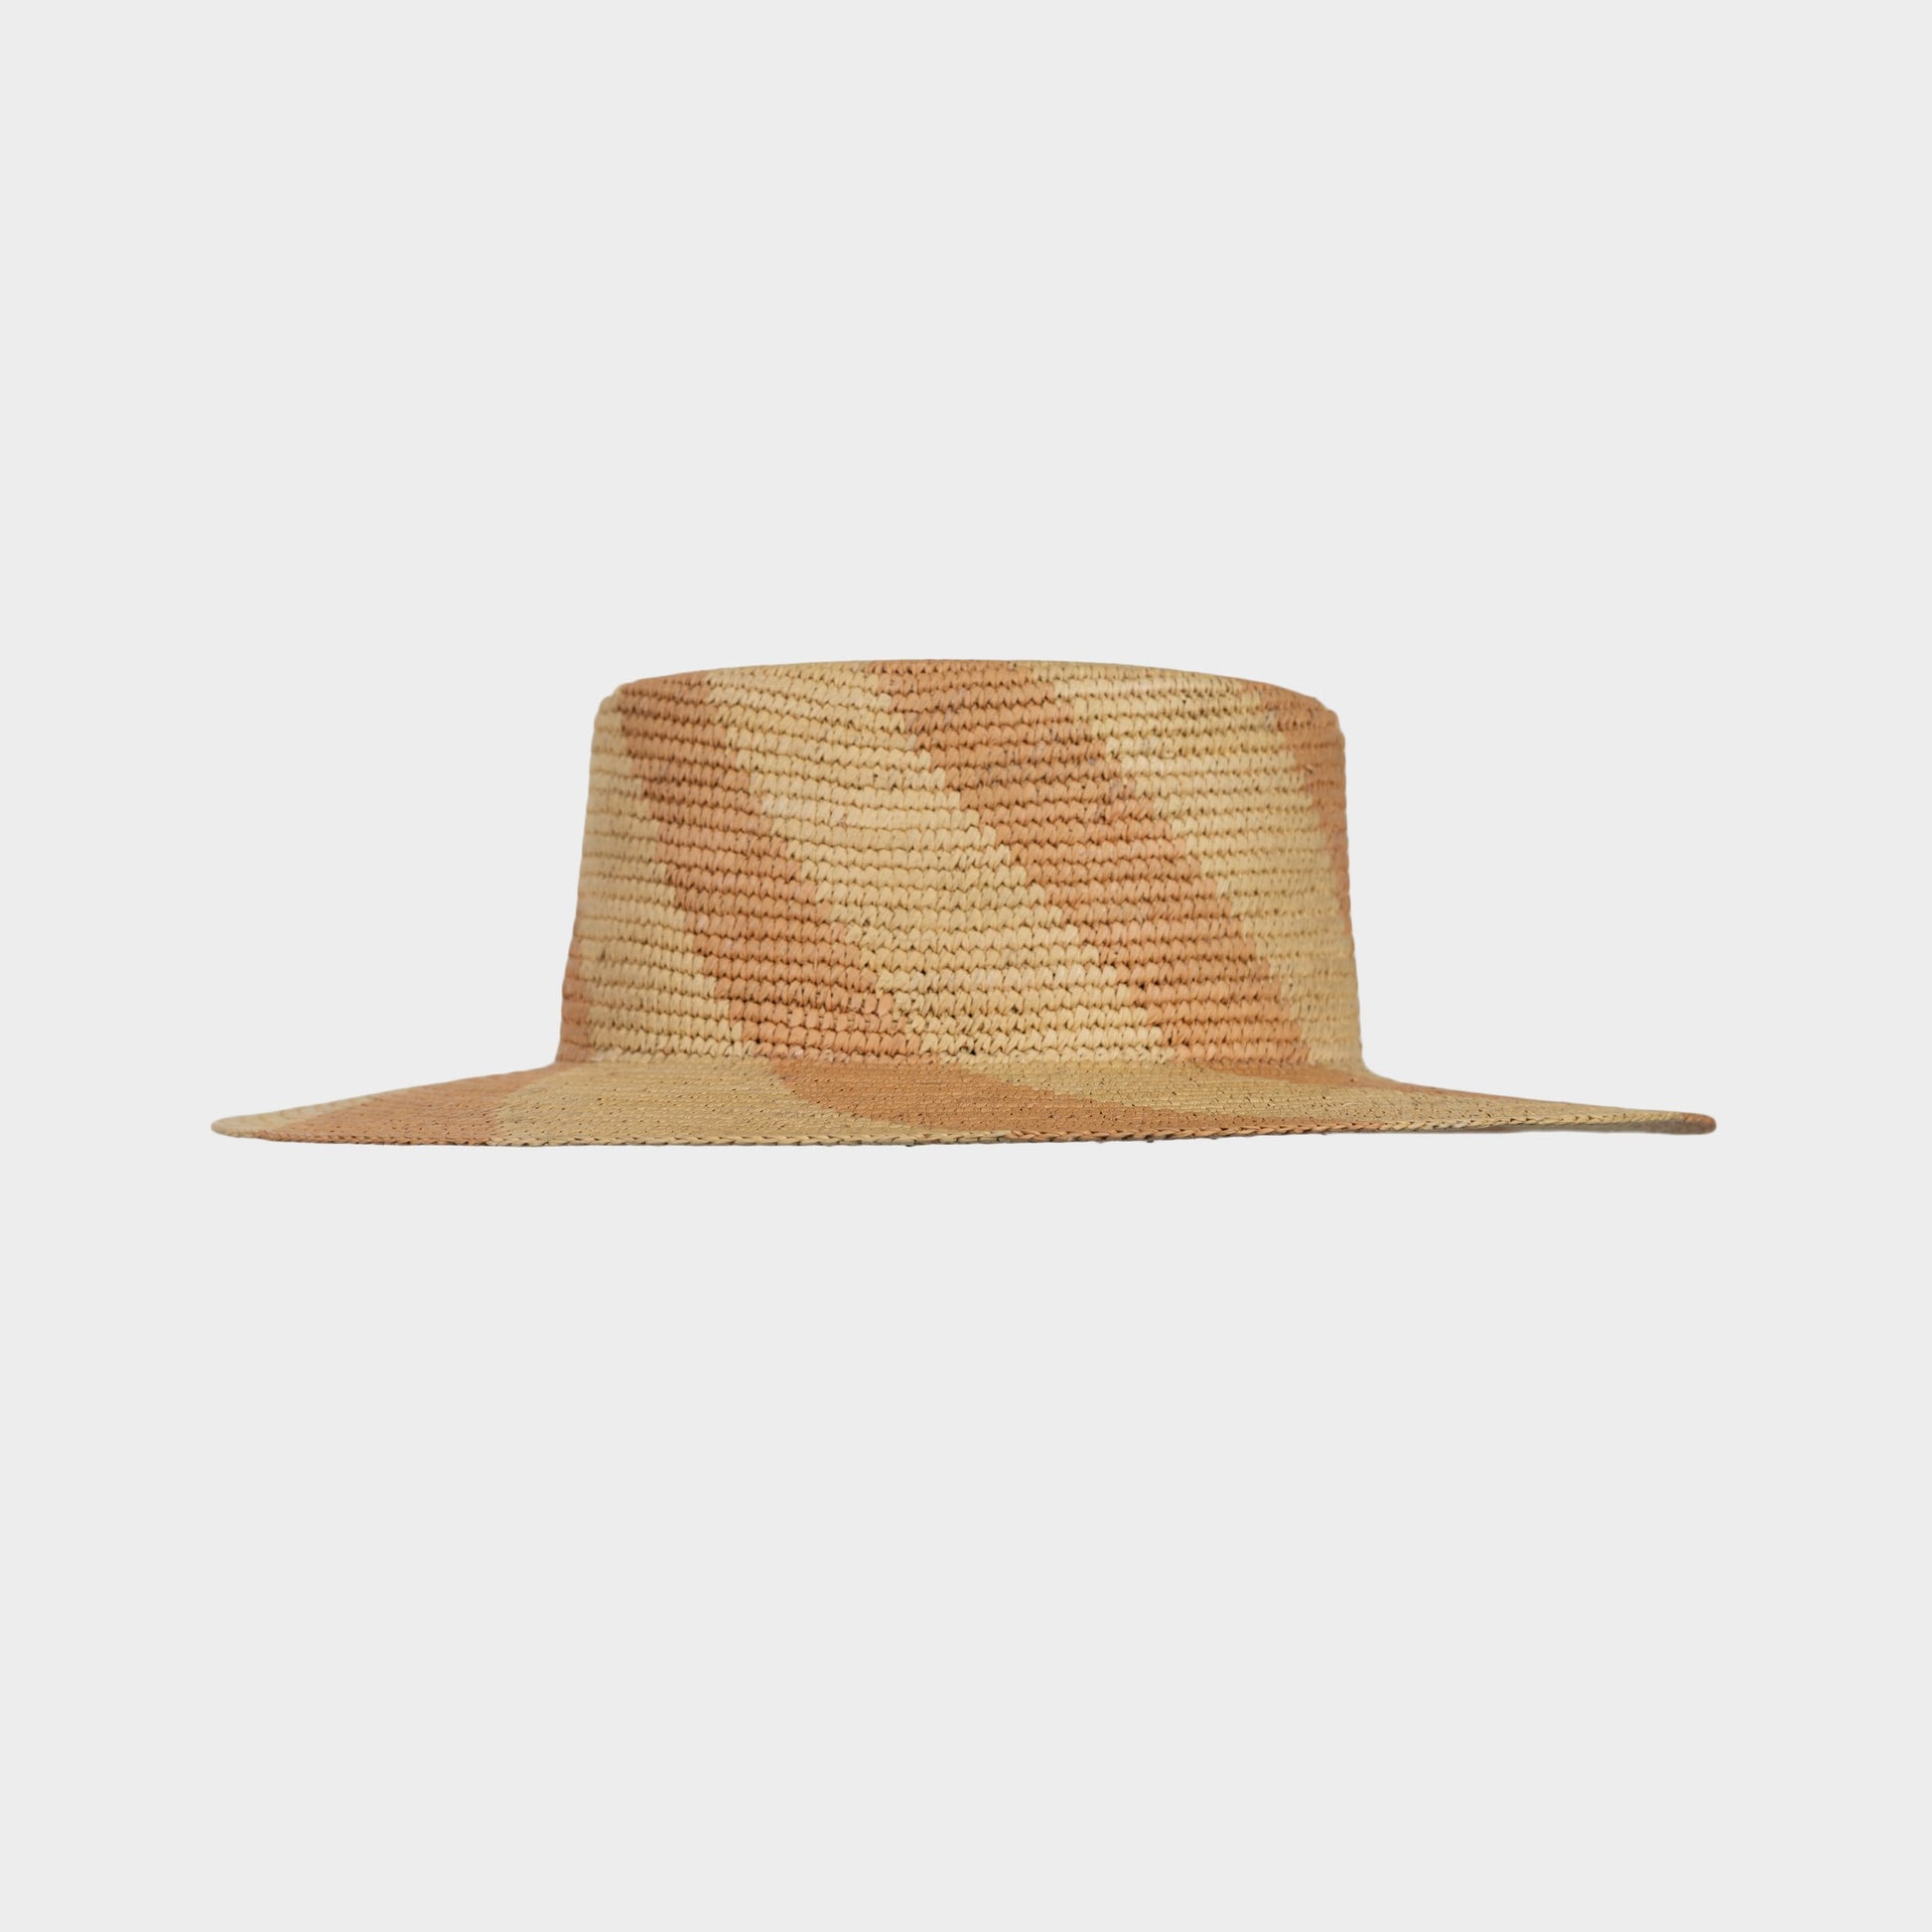 Handwoven Toquilla Straw hat in Muir